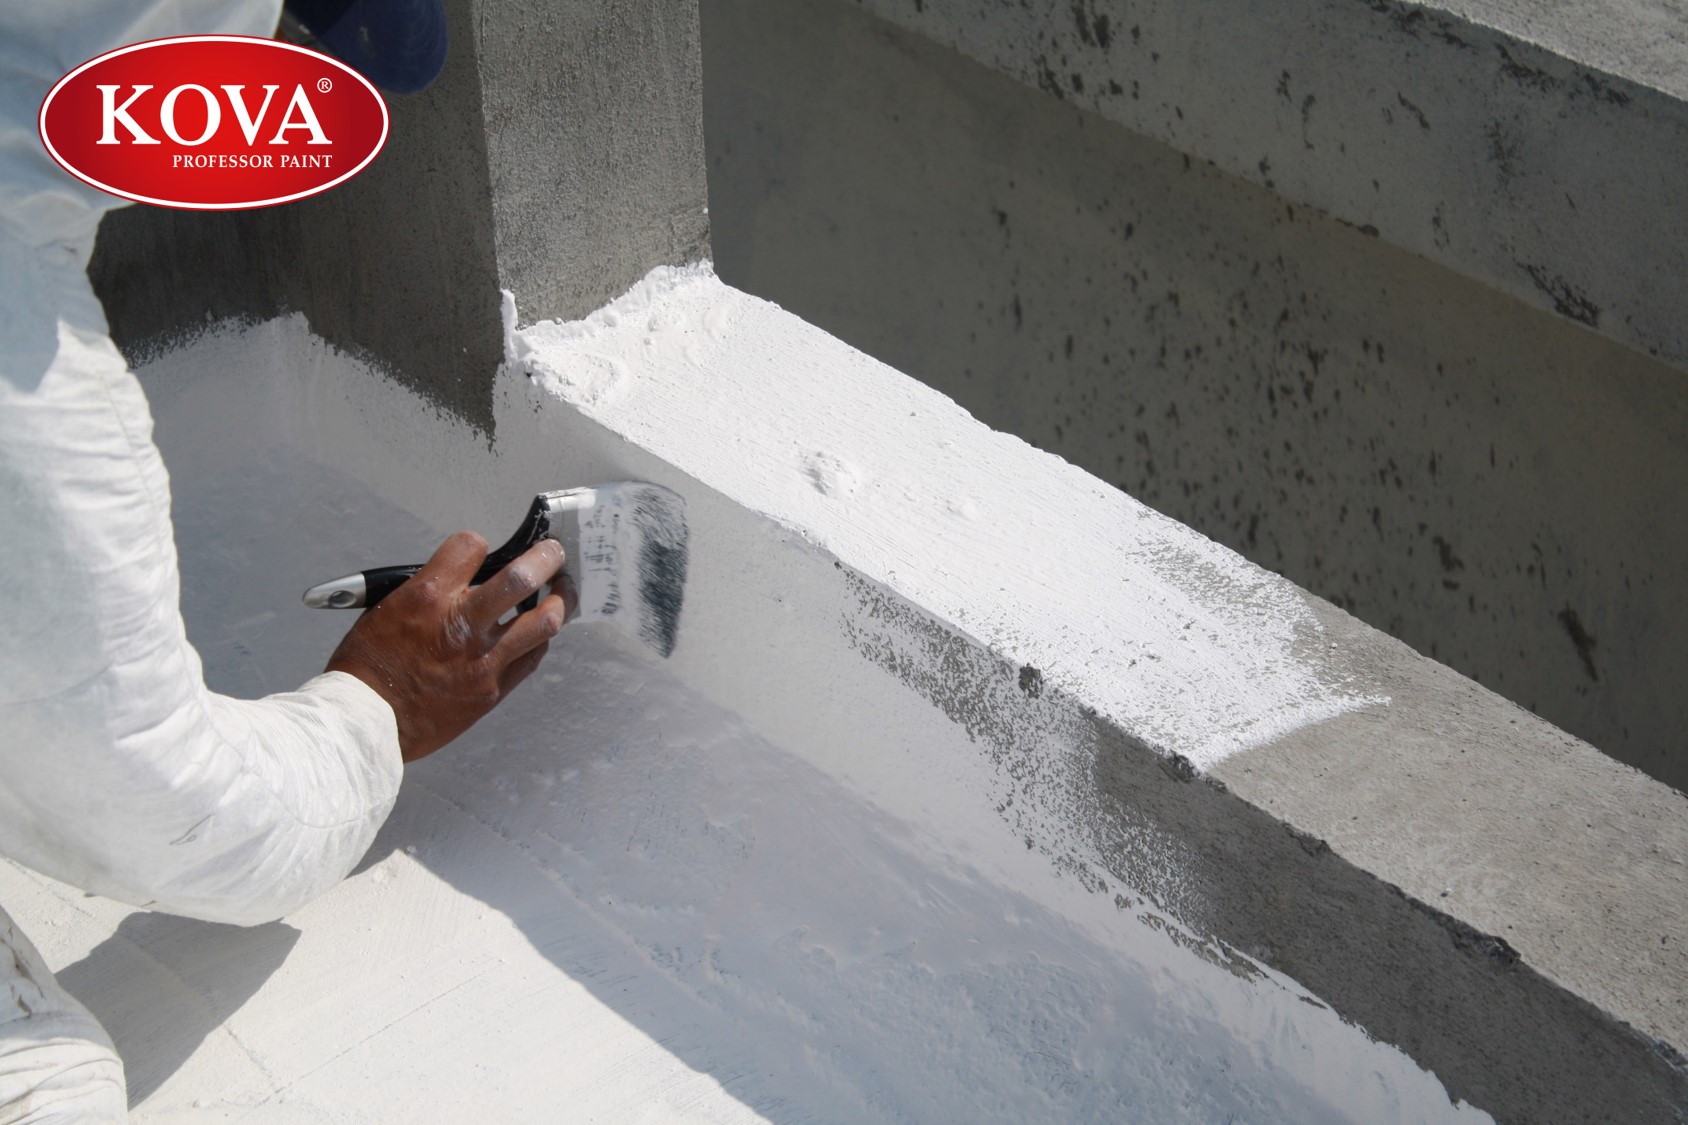 Chất chống thấm tường: Để bảo vệ ngôi nhà của bạn khỏi sự ảnh hưởng của thời tiết và độ ẩm, hãy sử dụng chất chống thấm tường để ngăn chặn độ ẩm xâm nhập và đảm bảo tường nhà luôn khô ráo và bền vững.